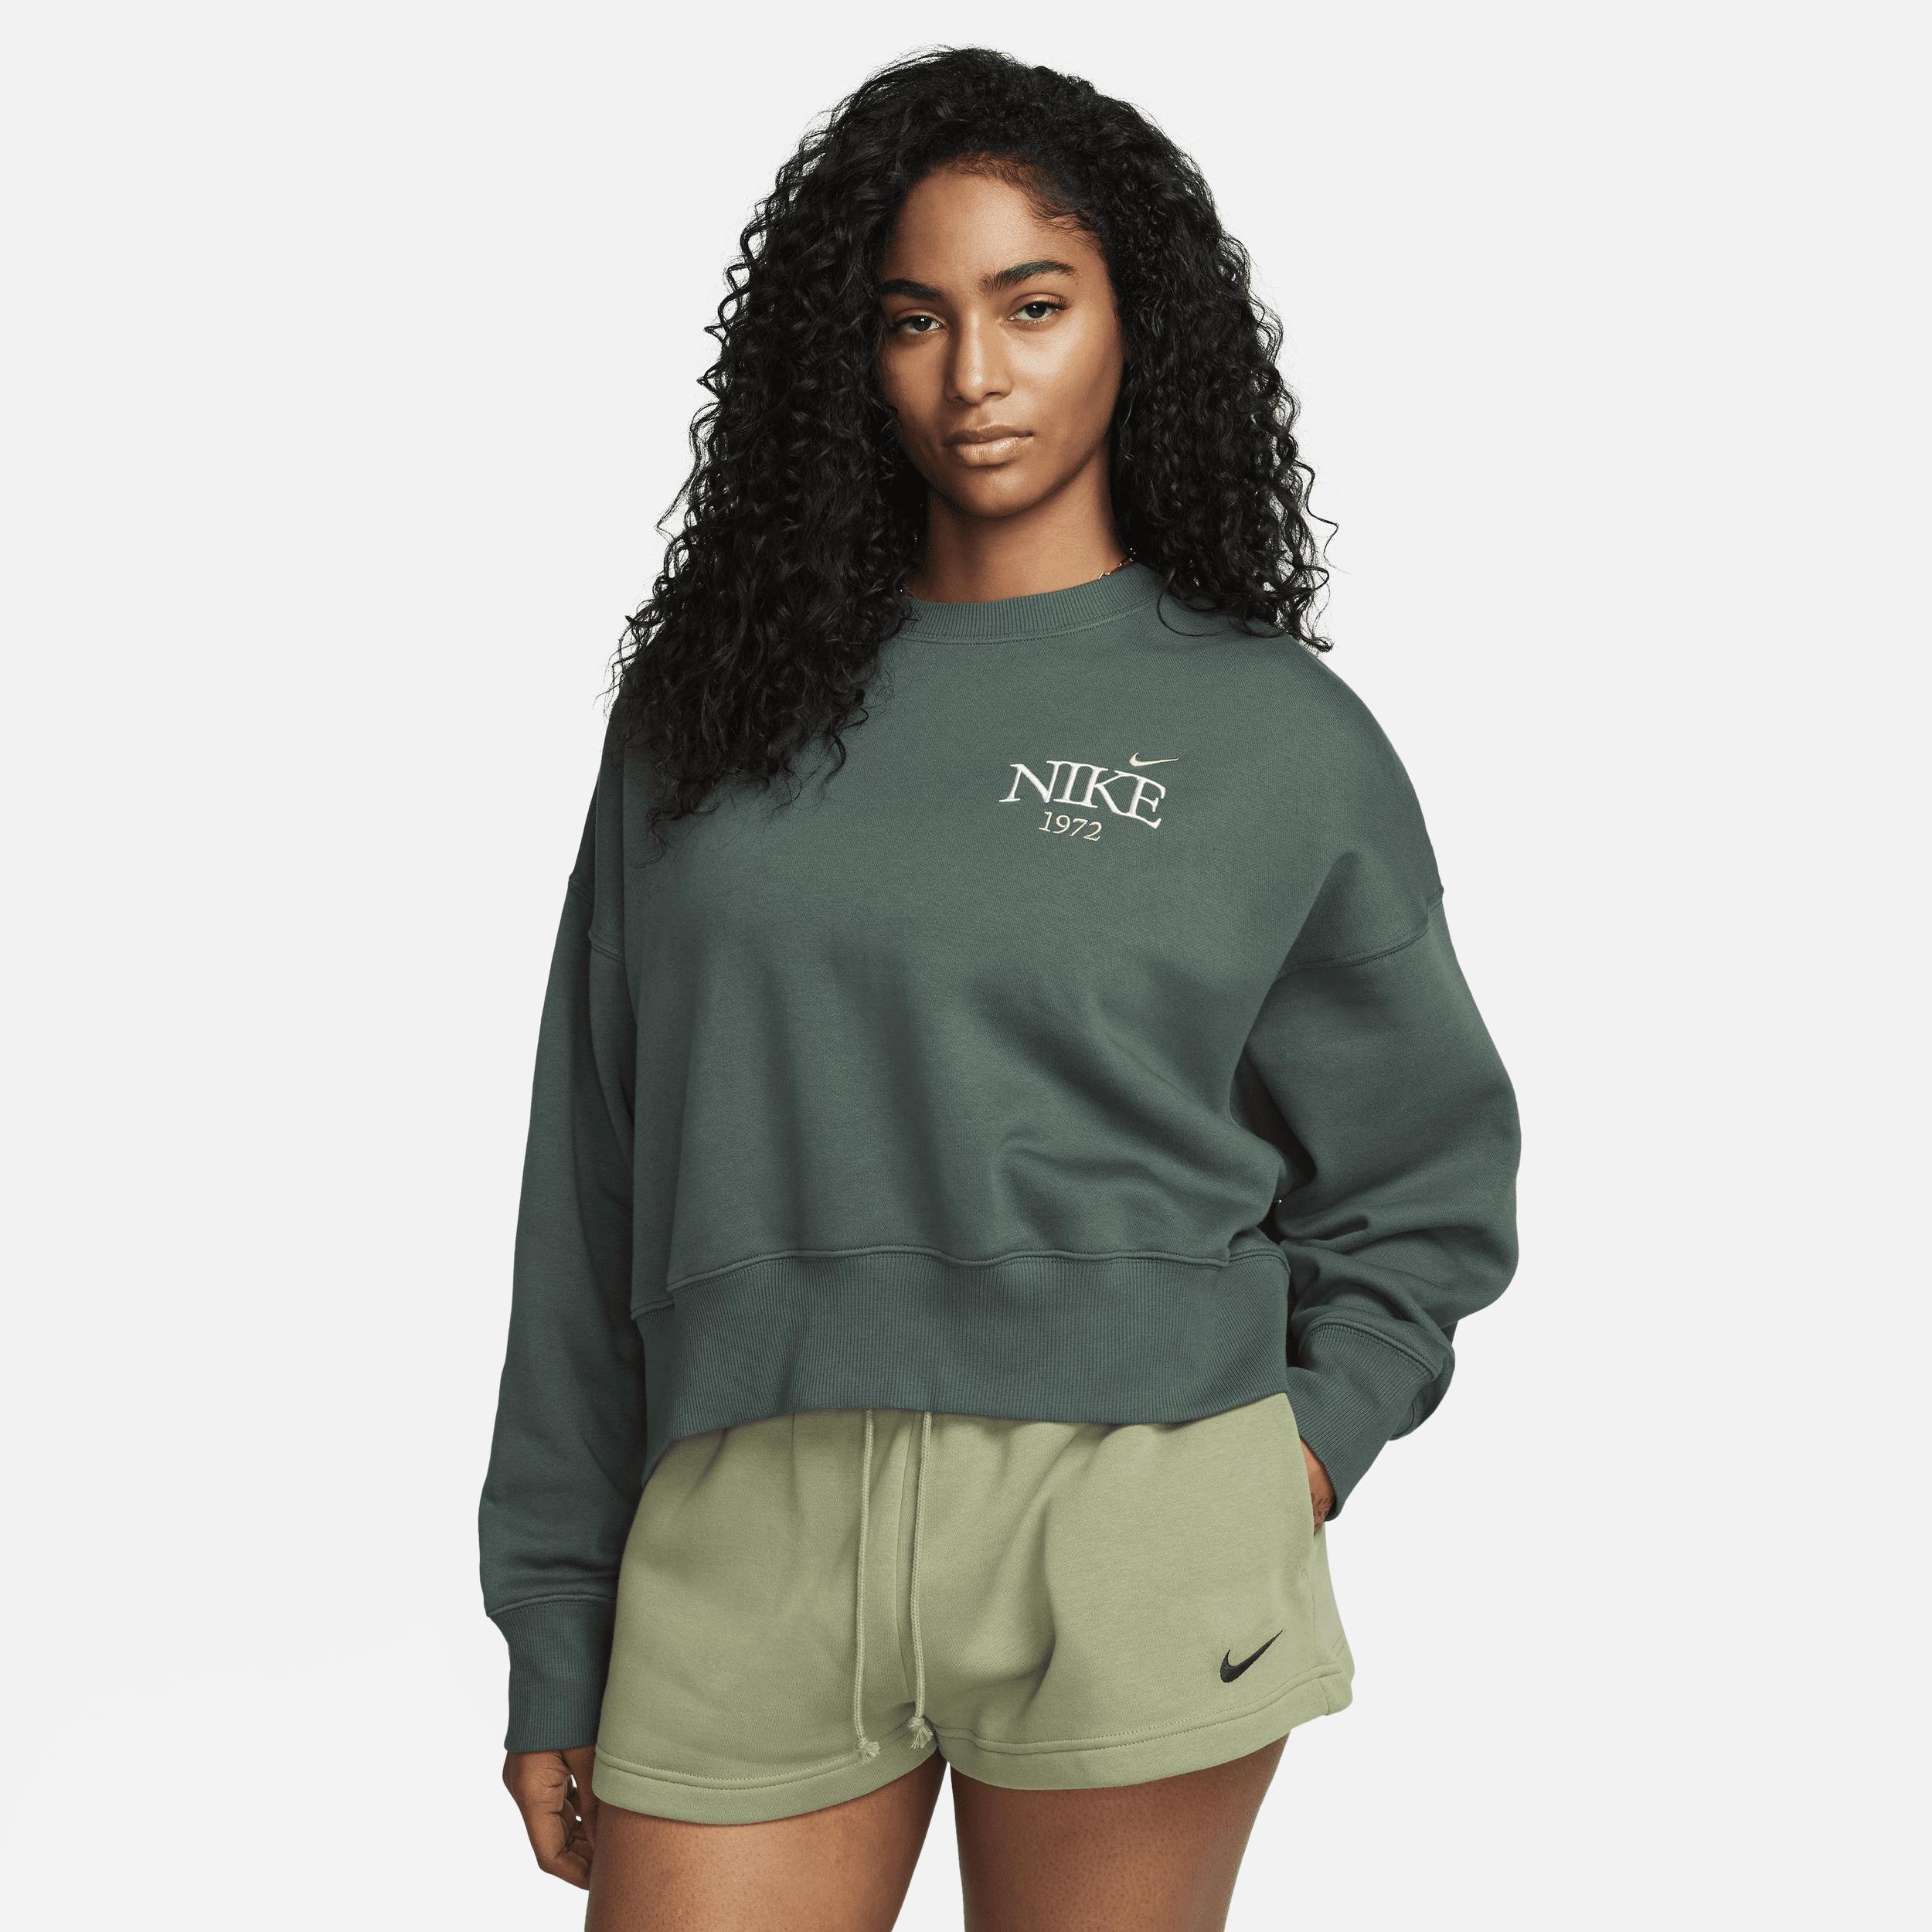 Women's Nike Sportswear Phoenix Fleece Oversized Cropped Crew-Neck Sweatshirt by NIKE